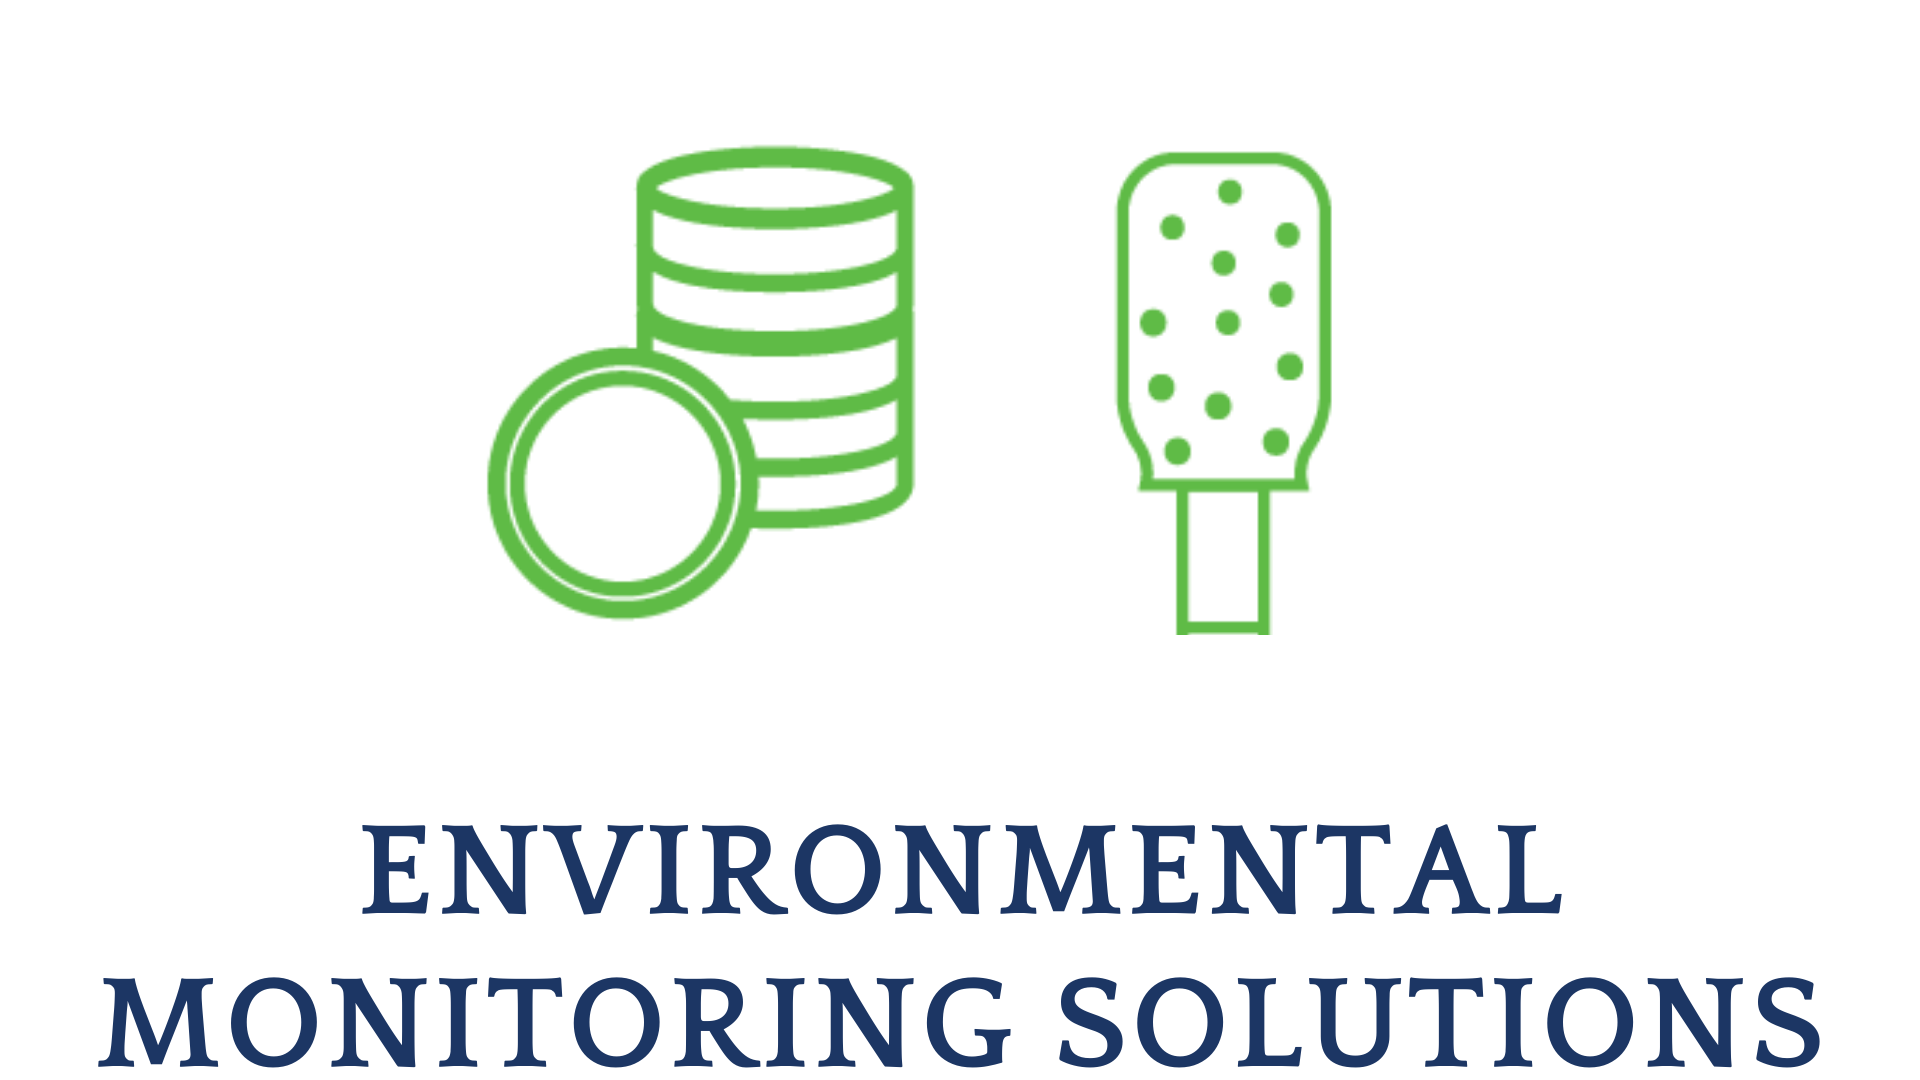 Environmental MONITORING SOLUTIONS